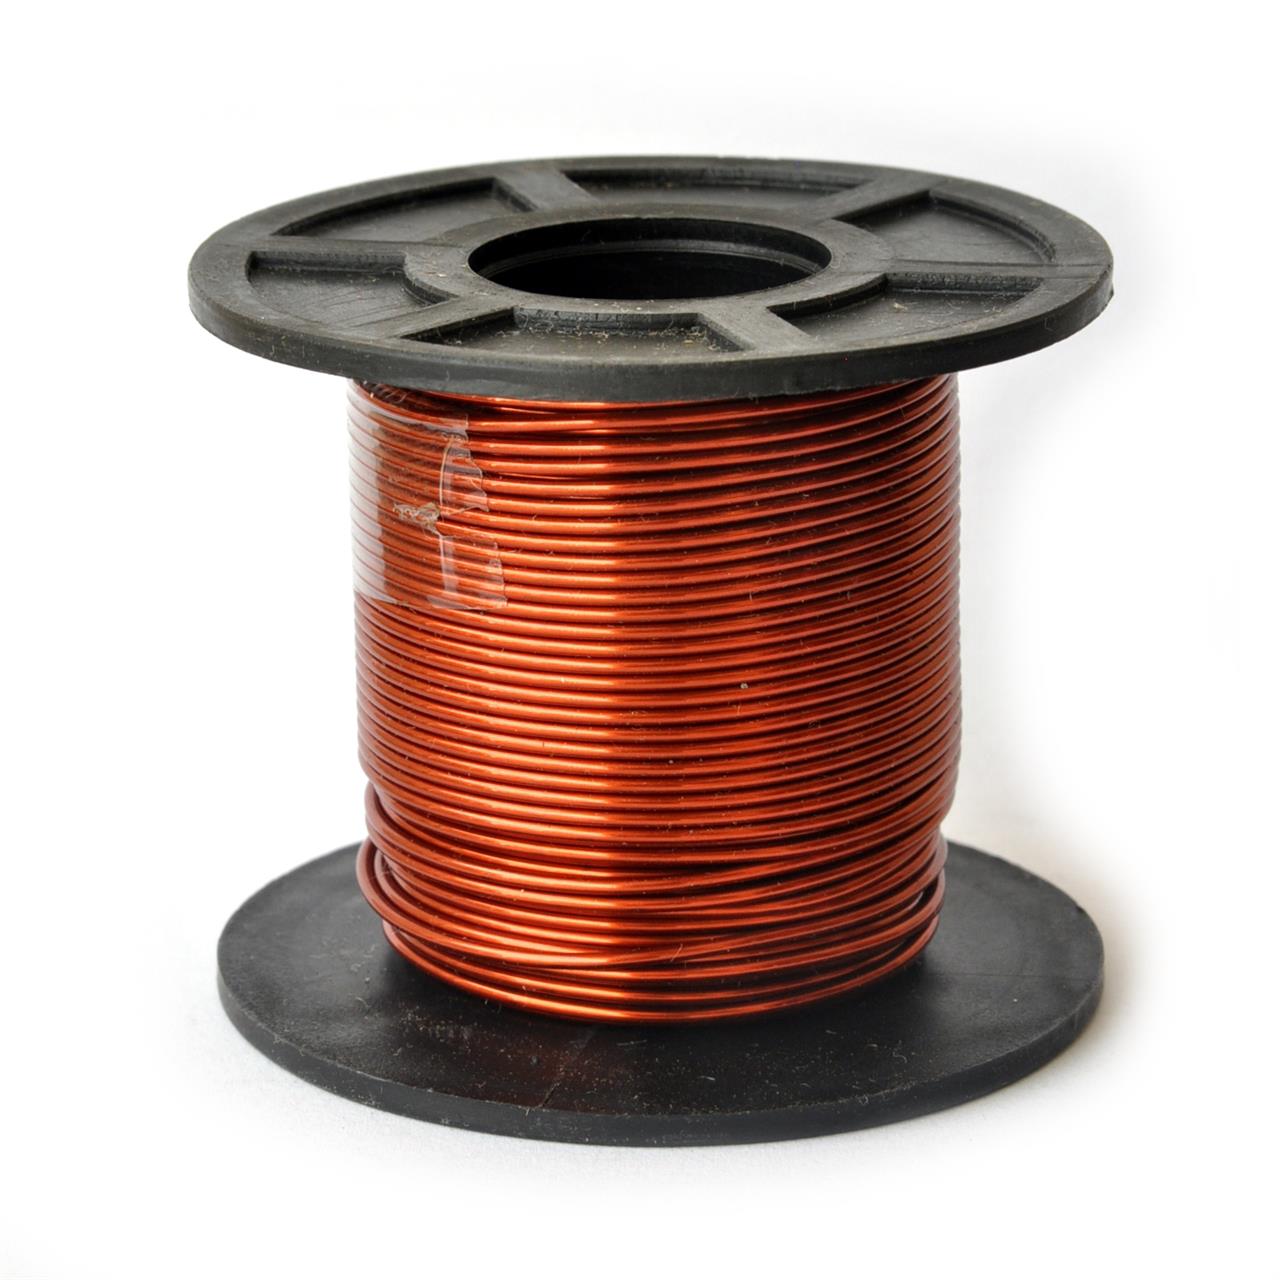 Fios de cobre esmaltados para bobinas, transformadores e indutores - Fio 17 AWG 250g